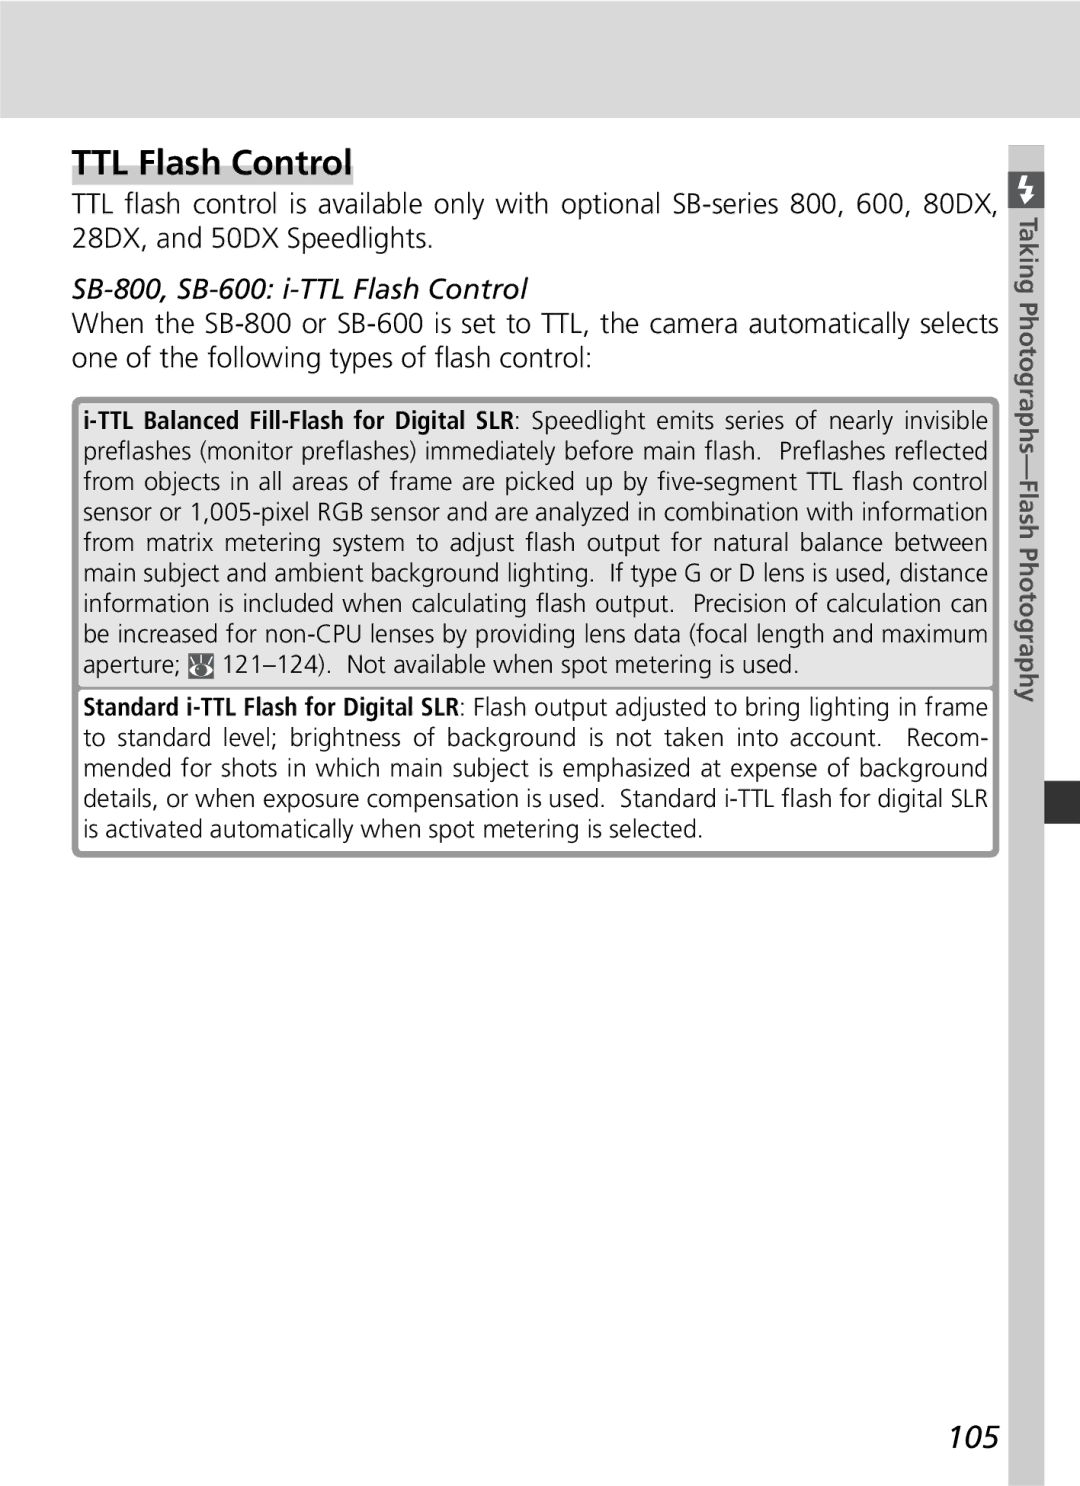 Nikon D2Hs manual 105, SB-800, SB-600 i-TTL Flash Control 